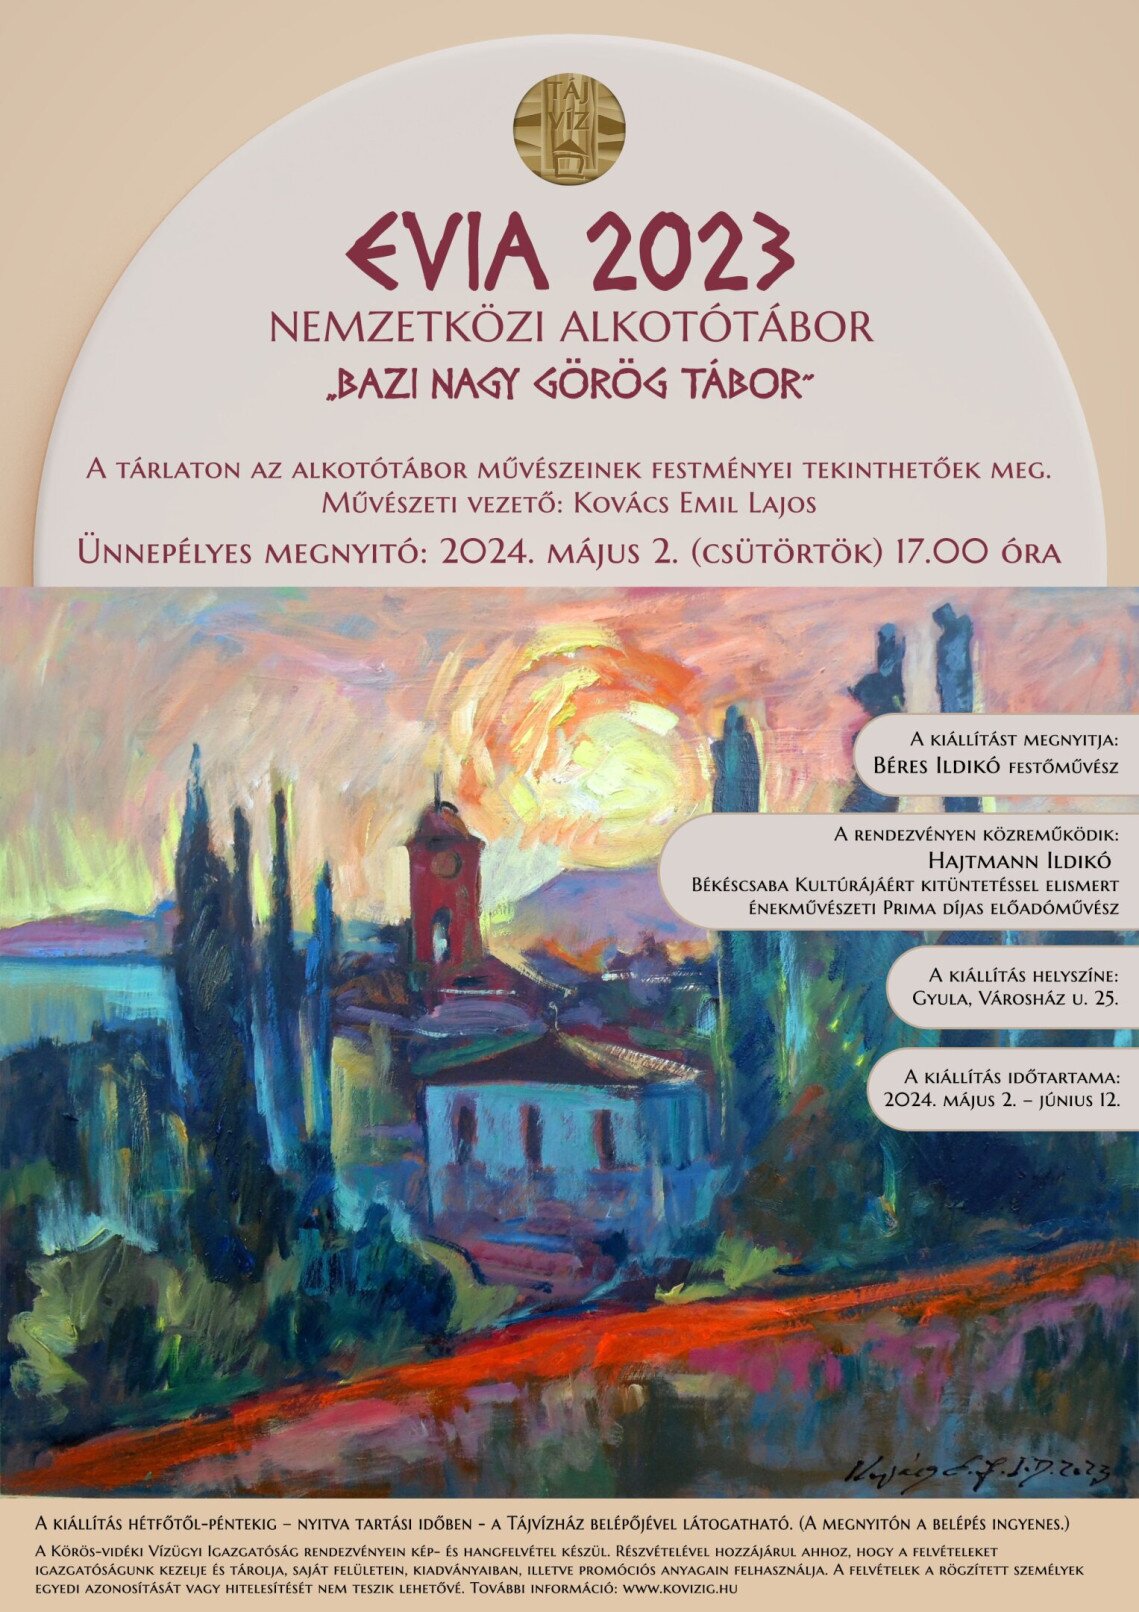 EVIA 2023 - Bazi nagy görög tábor - kiállításmegnyitó 2024. május 2. 17.00 óra